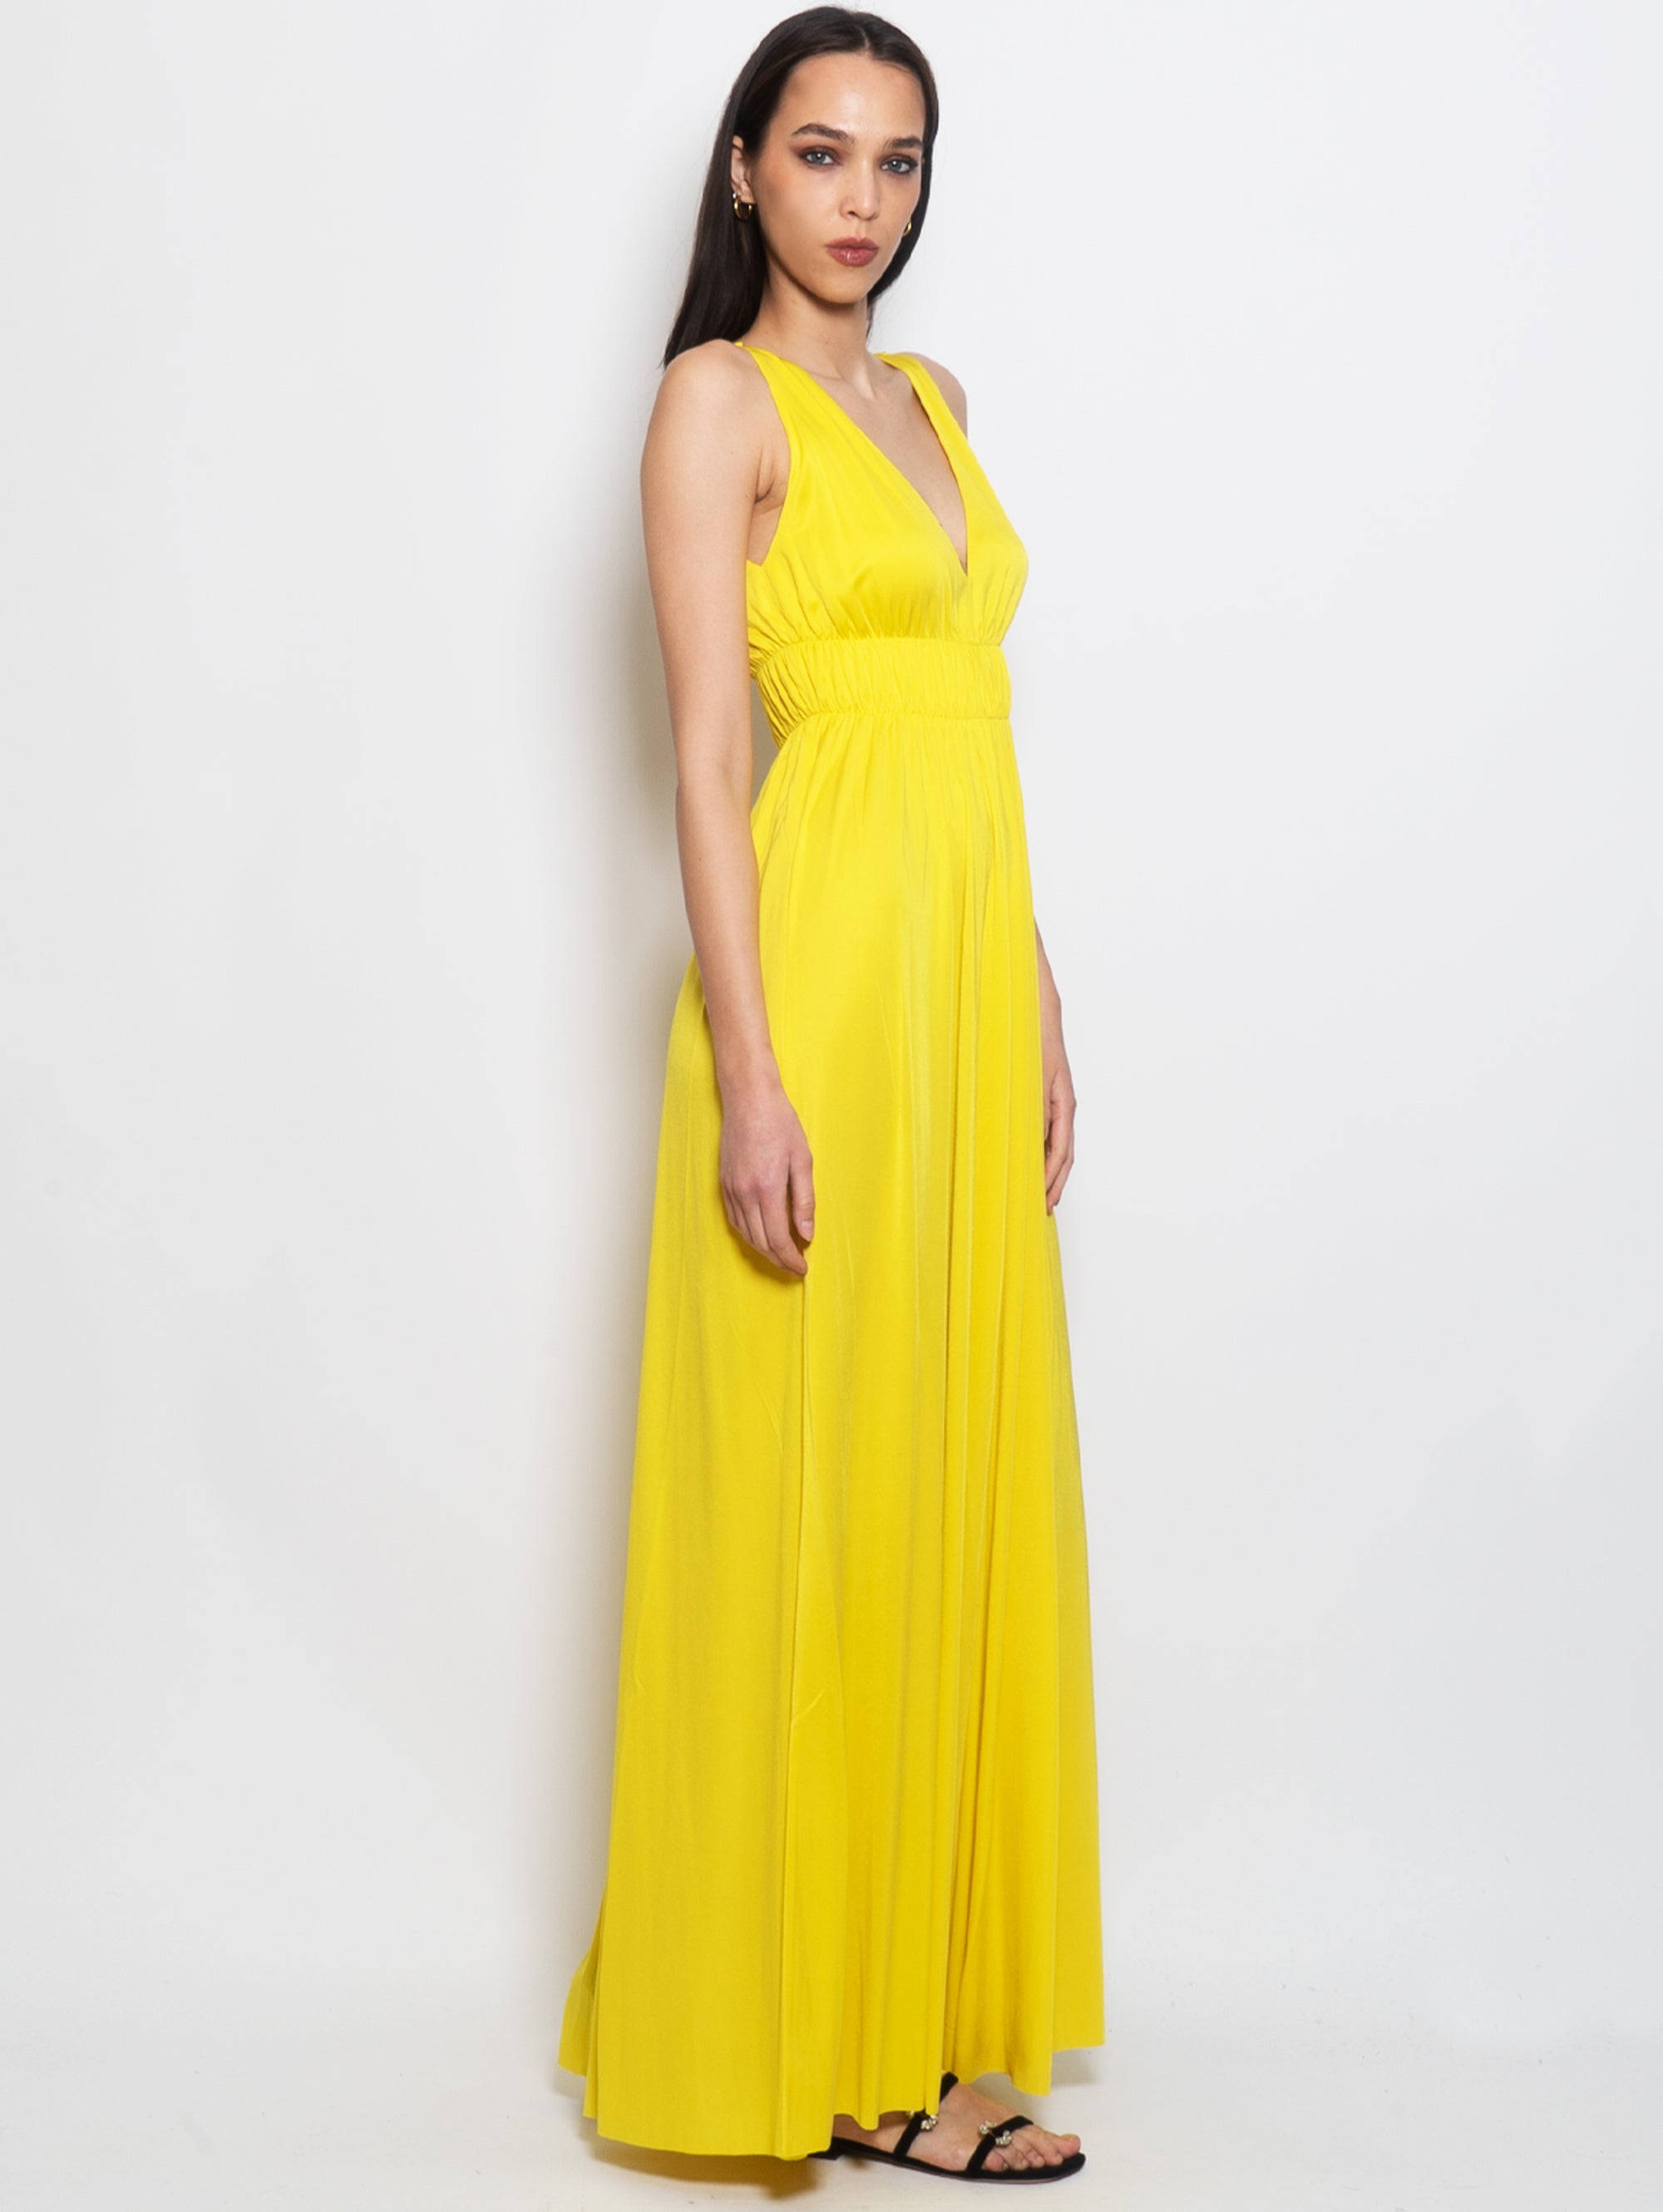 Langes gelbes Kleid im Empire-Stil